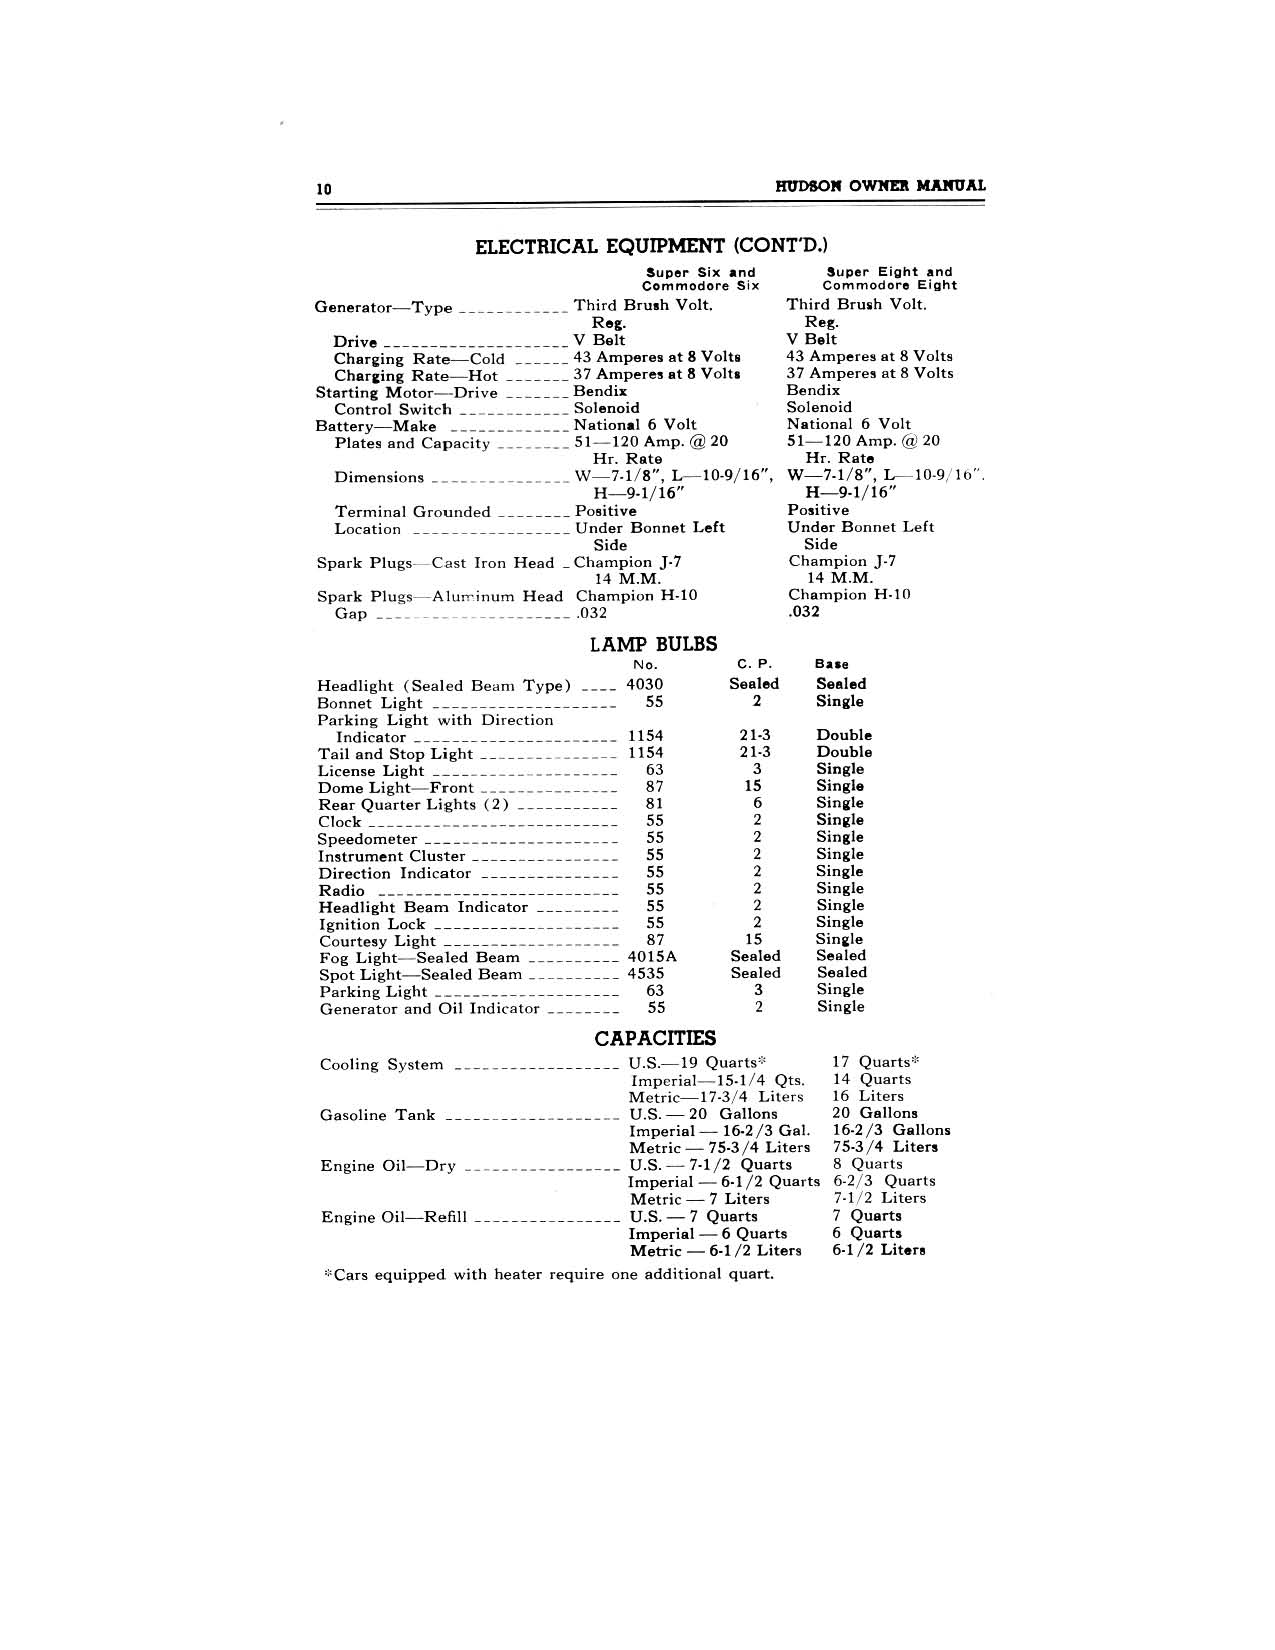 1949 Hudson Owners Manual-12